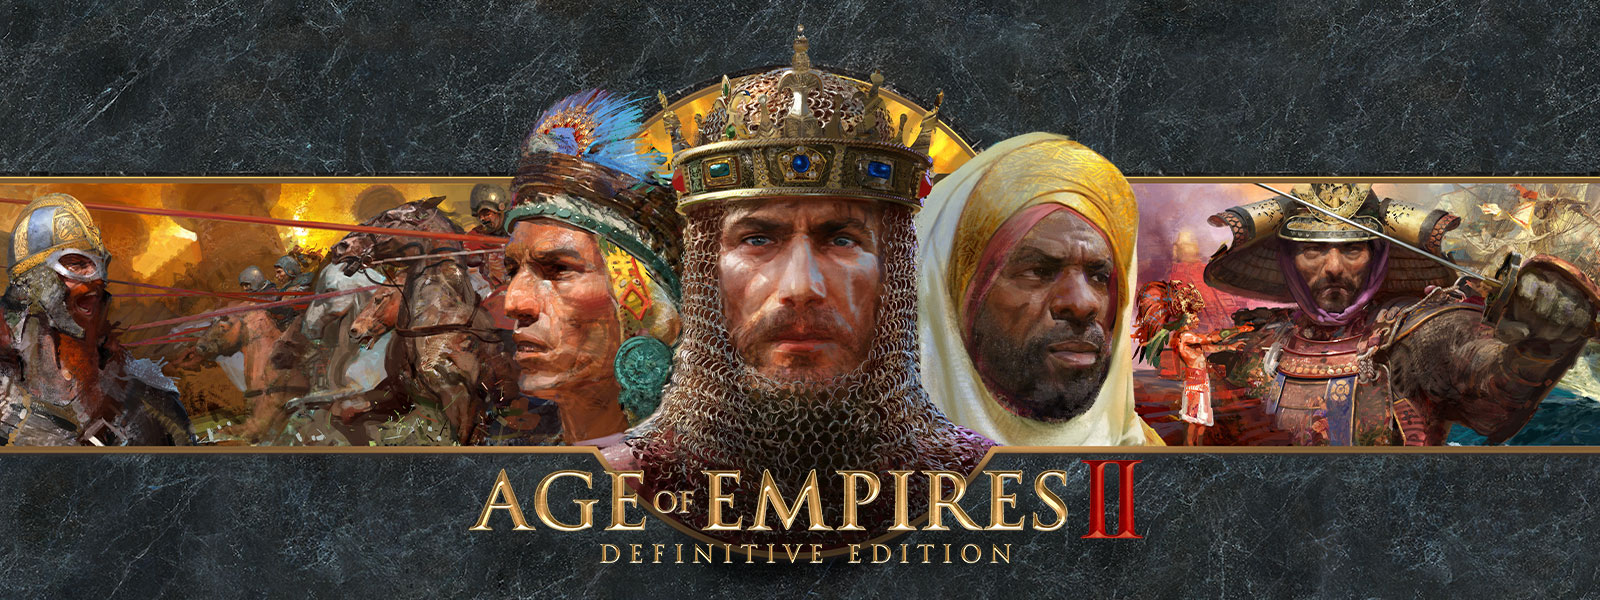 Logo Age of Empires II: Definitive Edition na šedém břidlicovém pozadí znázorňujícím vojevůdce s jejich armádami